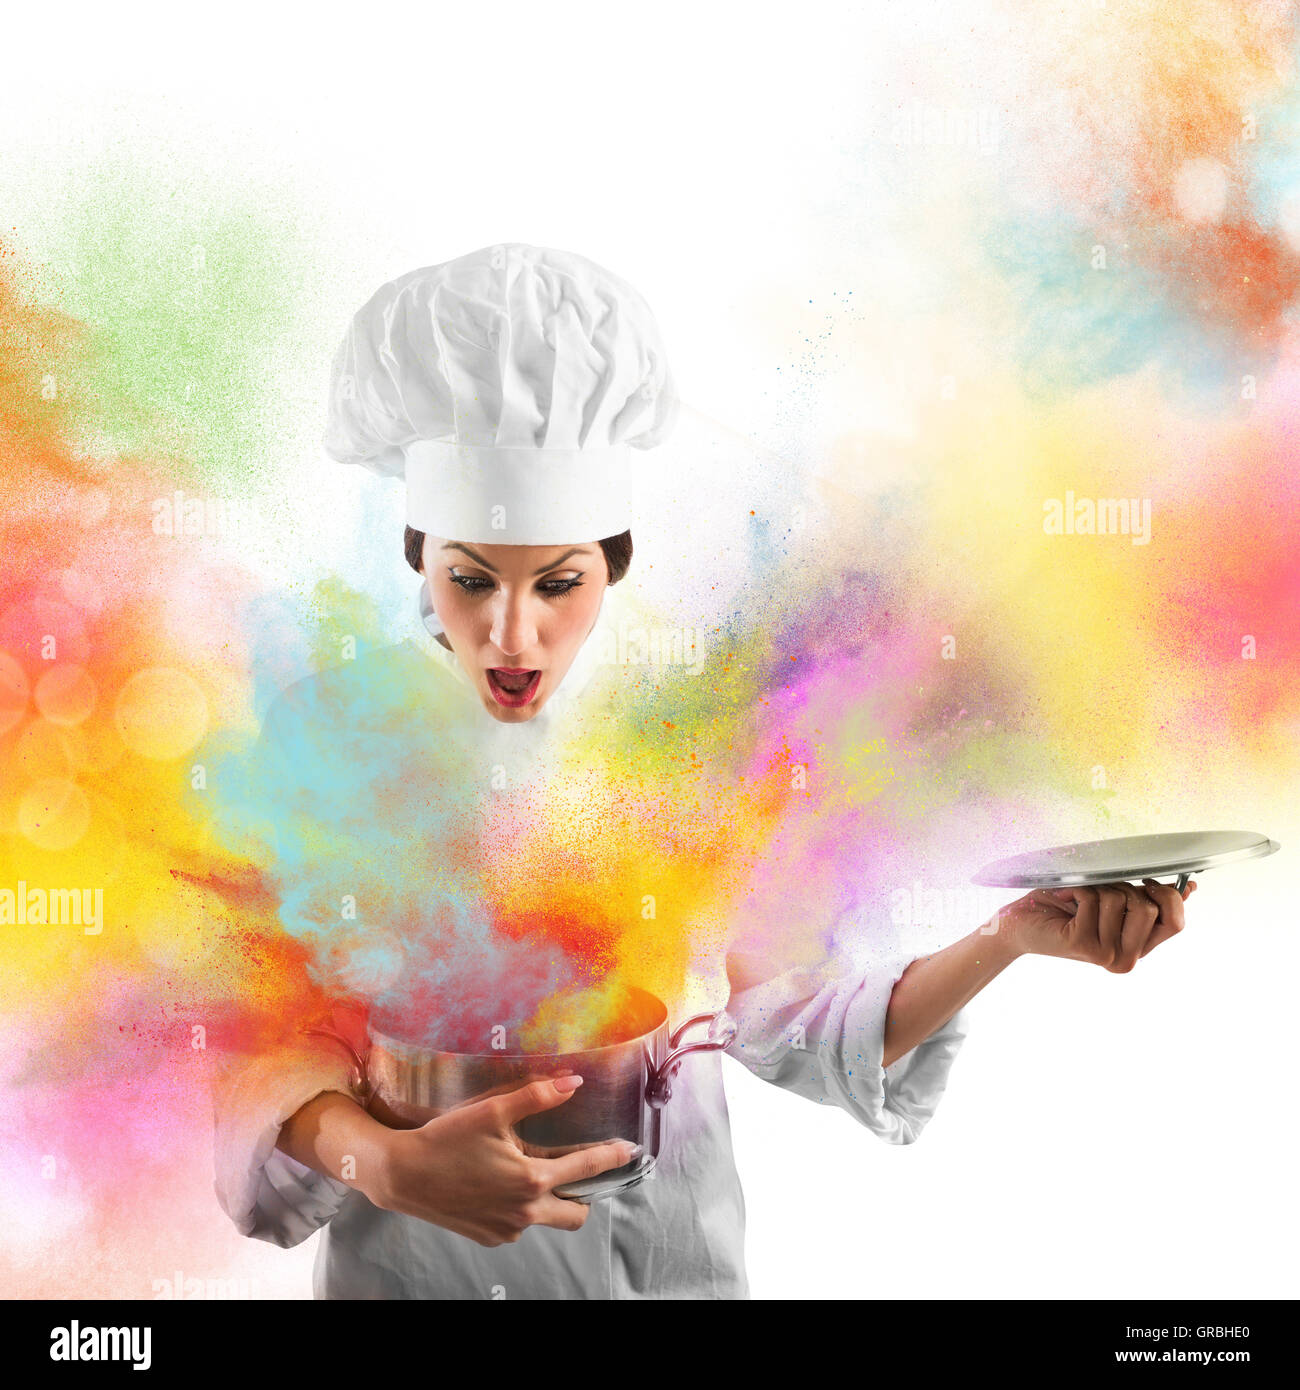 Explosión de colores en la cocina Foto de stock